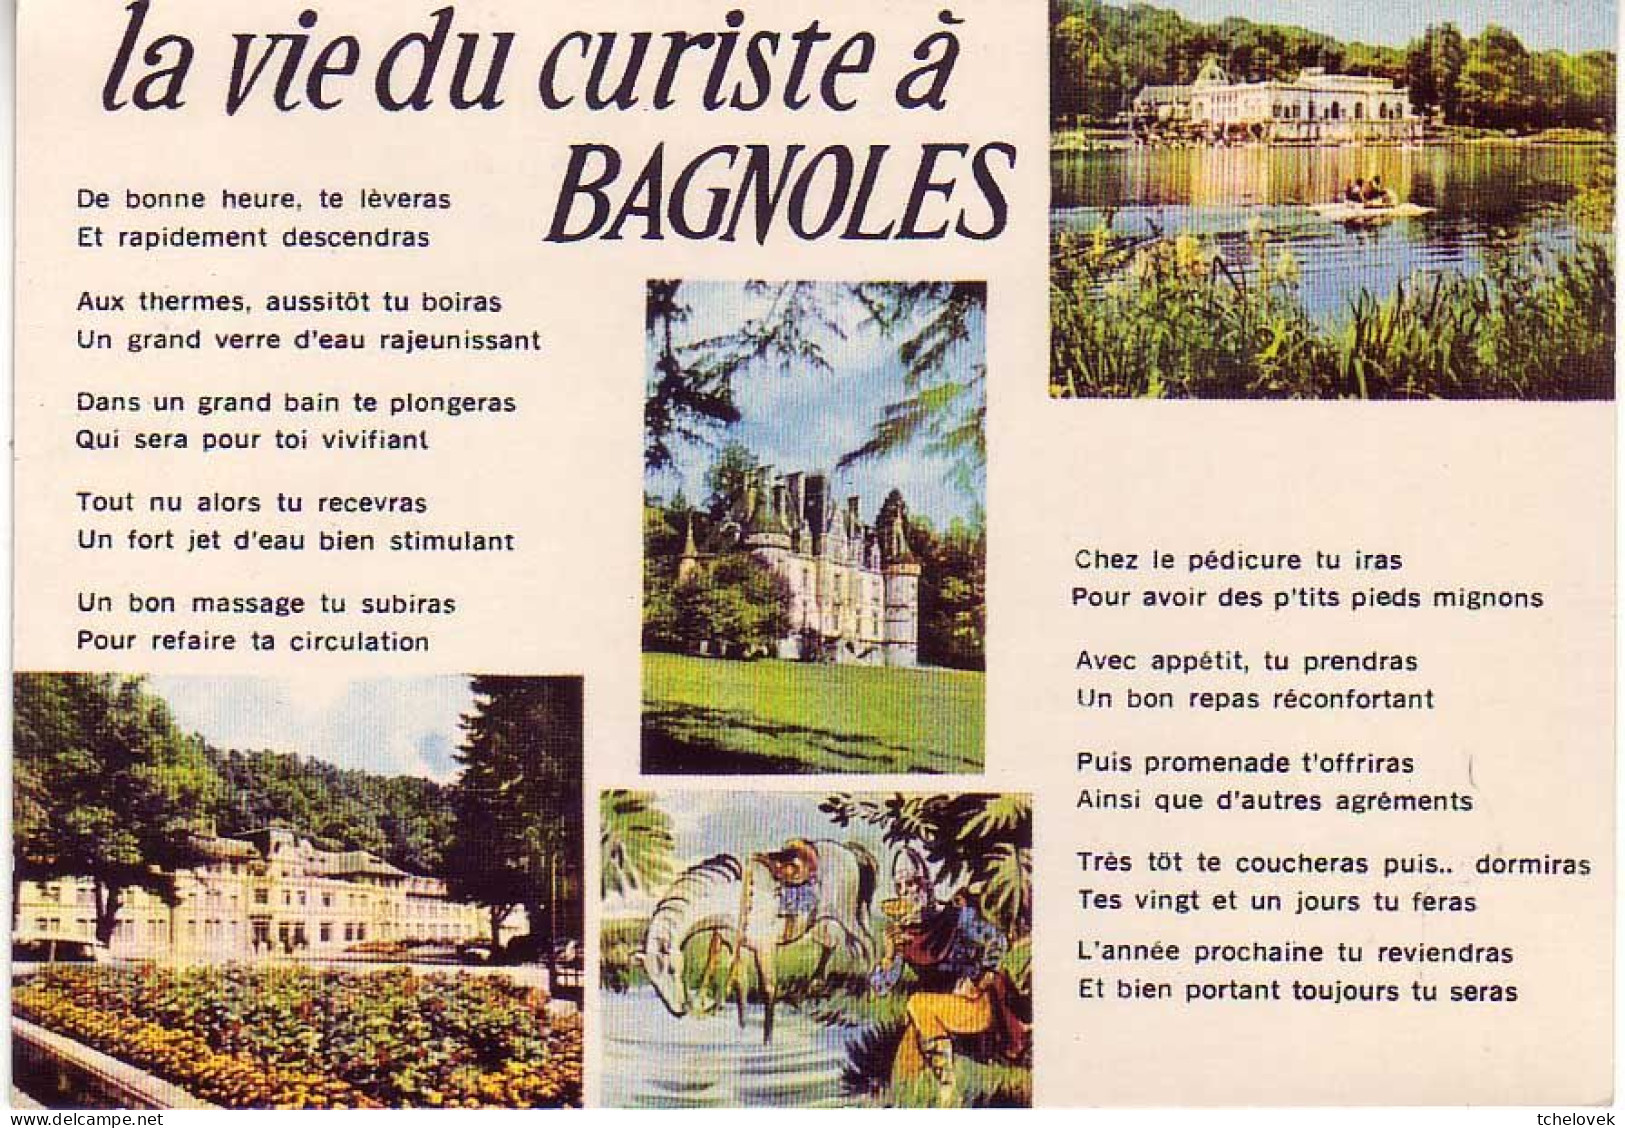 (61). Bagnoles De L'Orne. 505 Place De La Republique Et Eglise & 131 Station Thermale & 214 - Bagnoles De L'Orne